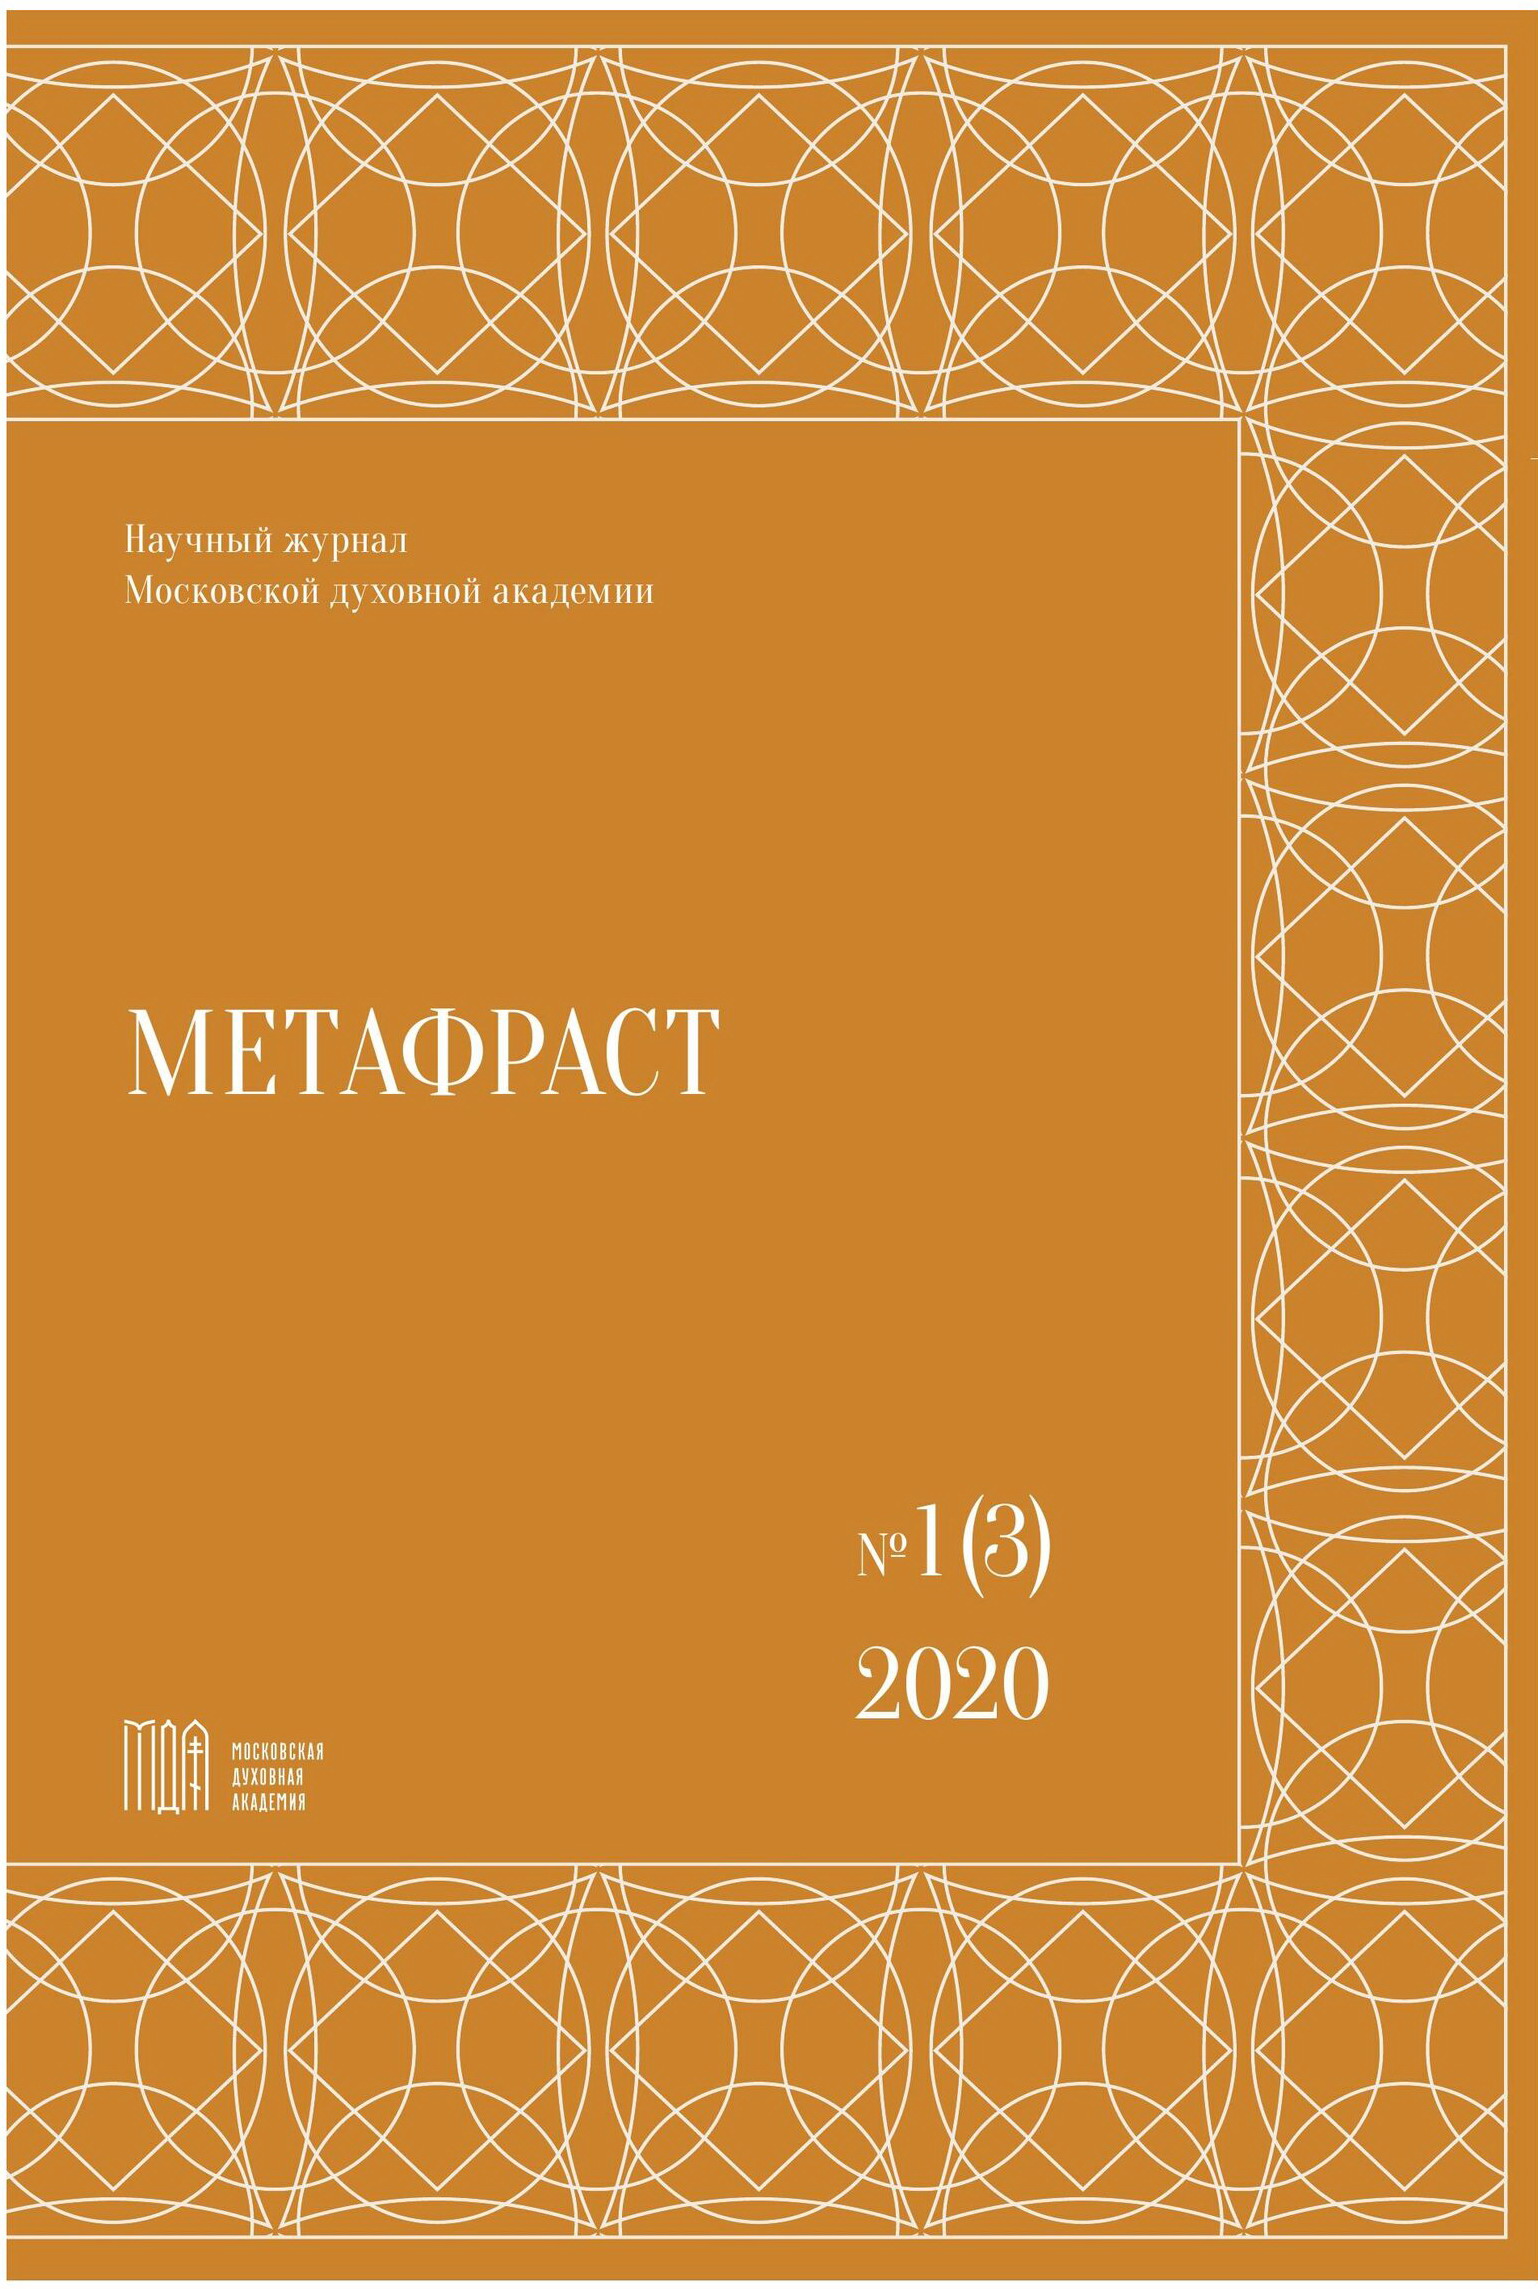 					Показать № 1 (3) (2020): Метафраст
				